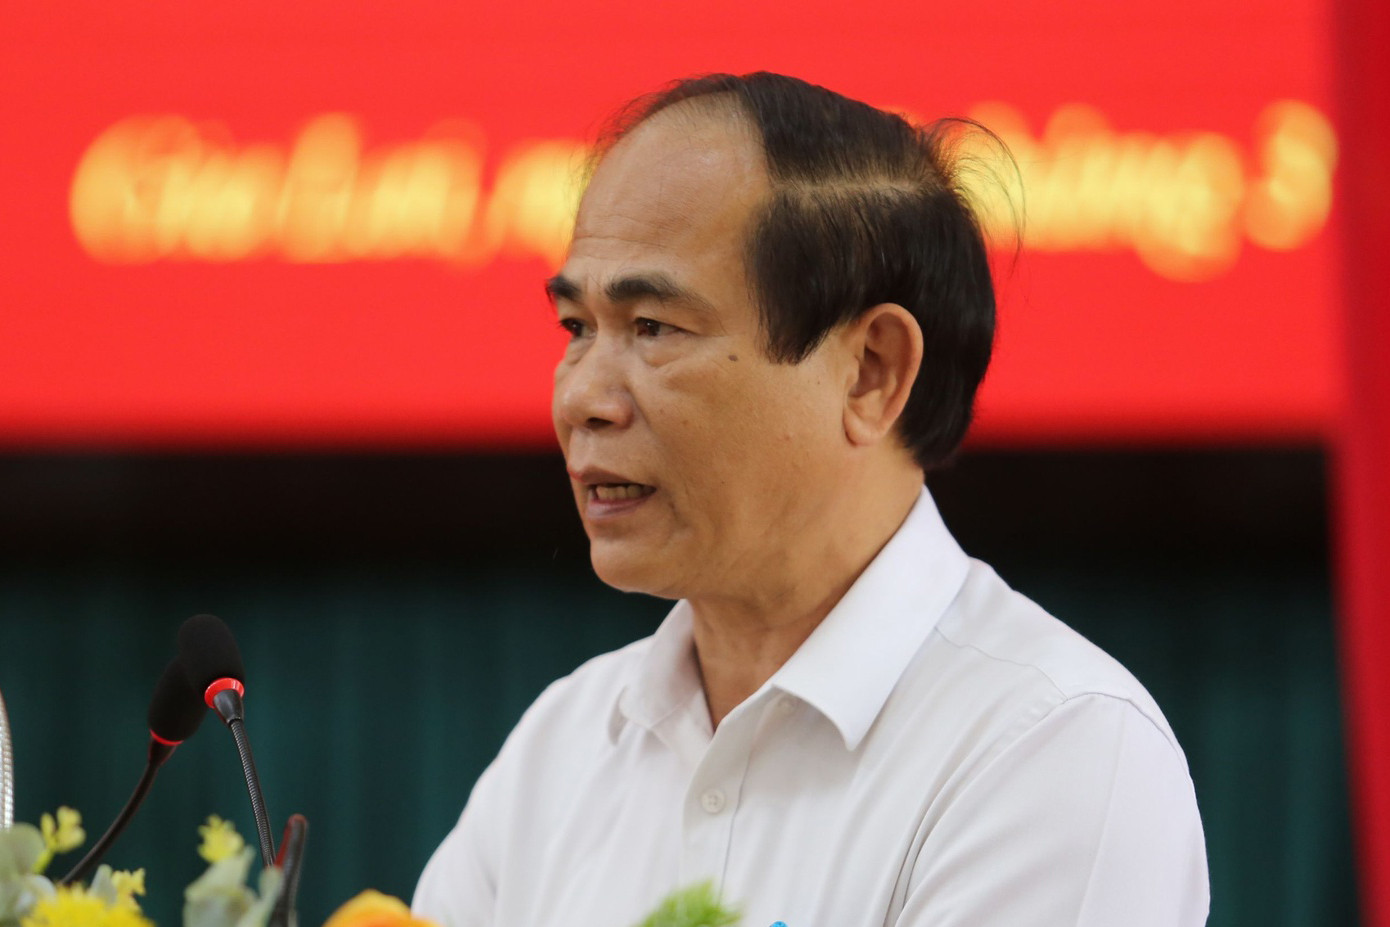 Đề nghị Ban Bí thư kỷ luật Chủ tịch tỉnh Gia Lai Võ Ngọc Thành